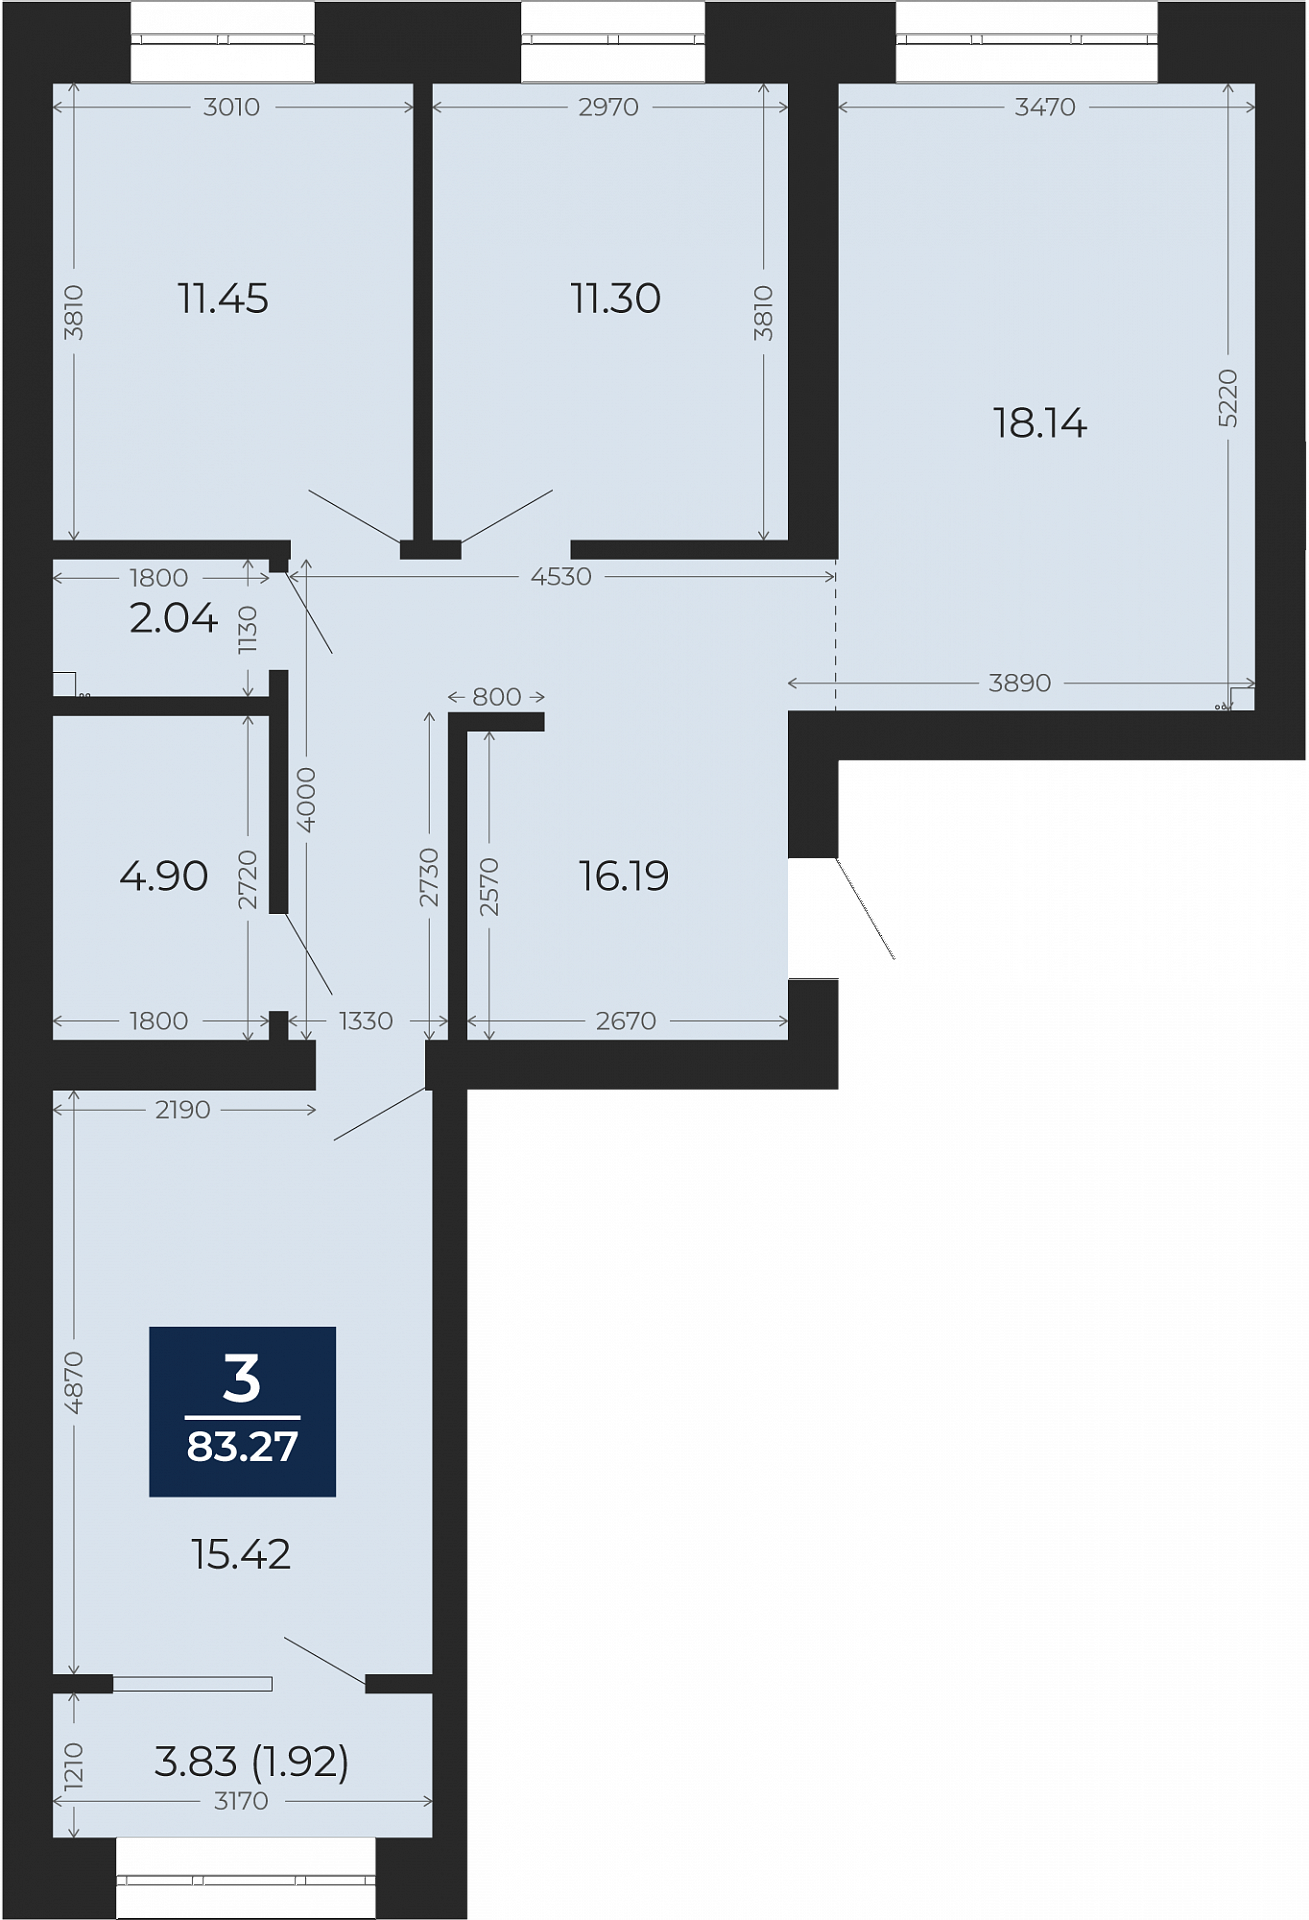 Квартира № 107, 3-комнатная, 83.27 кв. м, 5 этаж